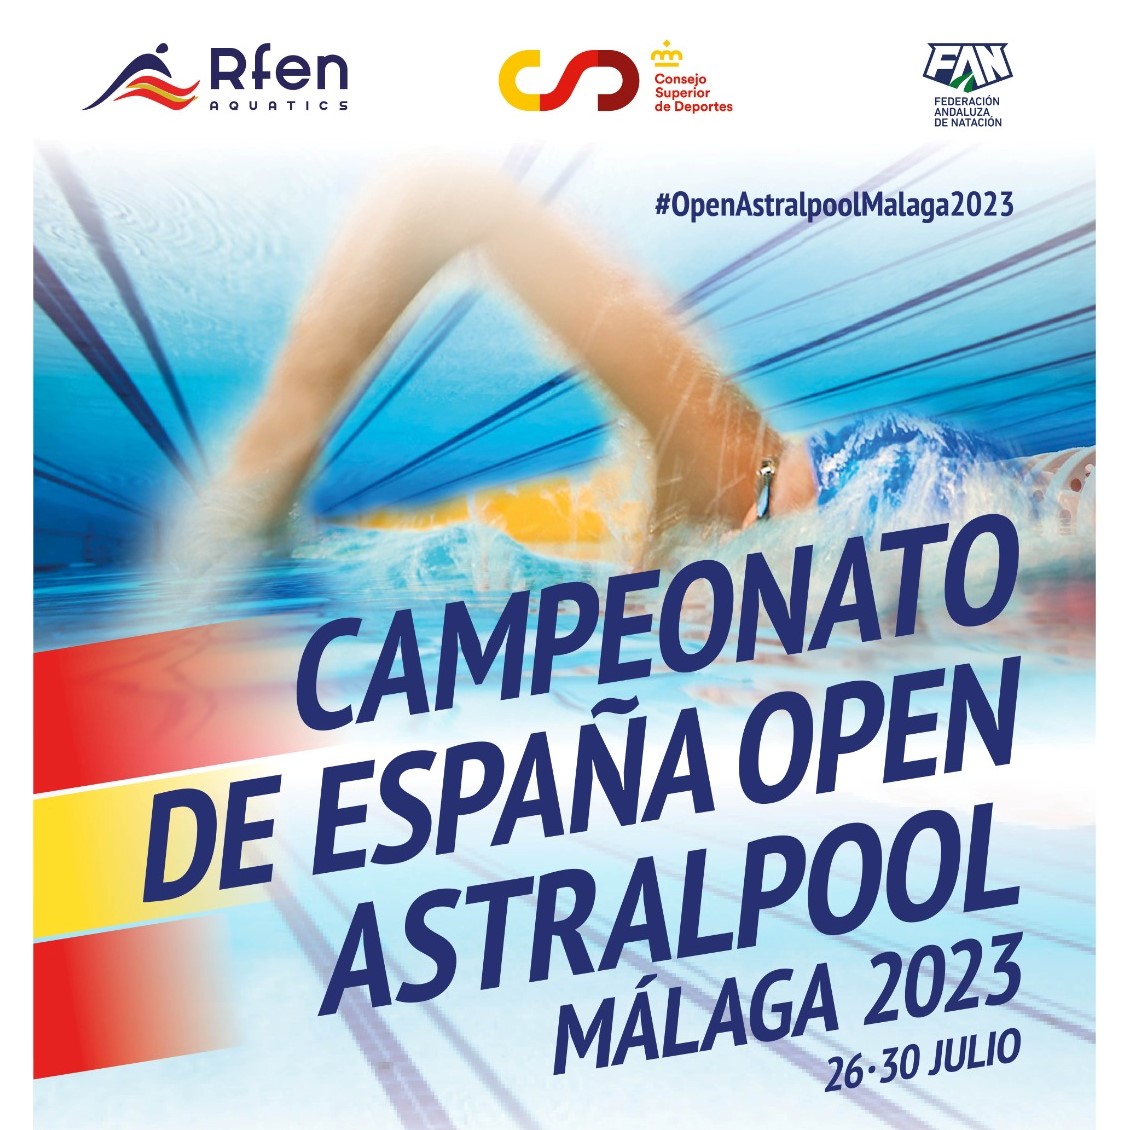 Campeonato de España open Astrapool 2023